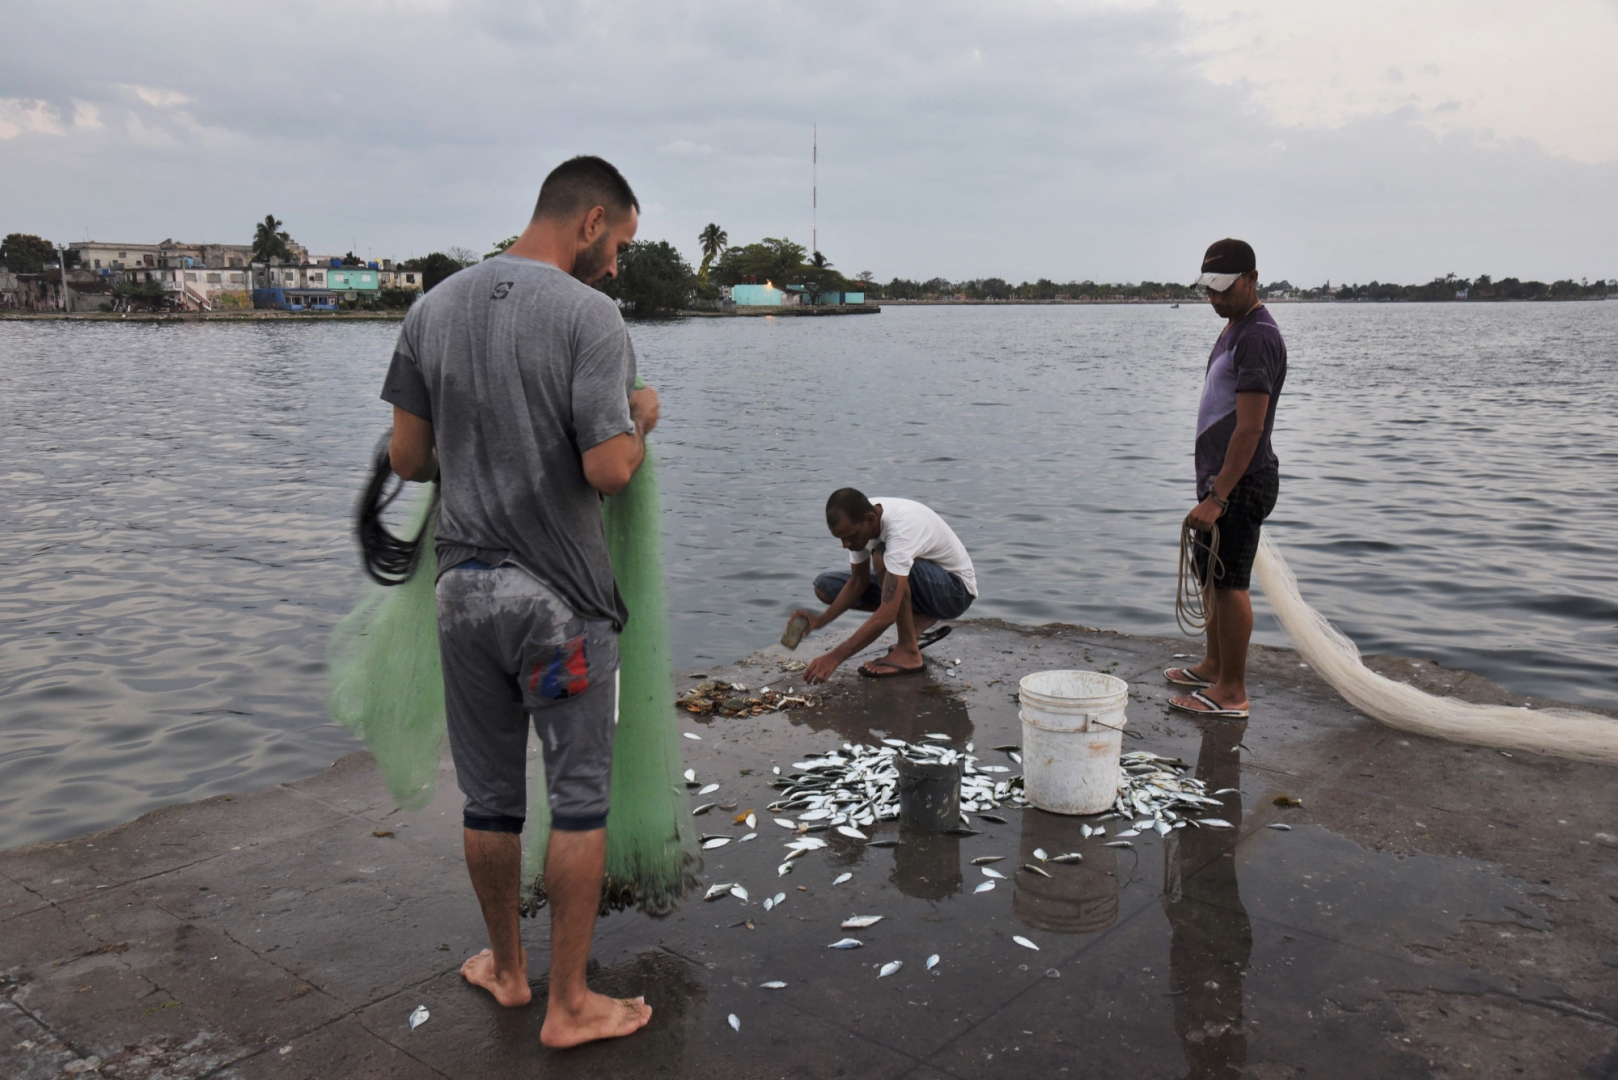 Рыбаки оценивают свой улов, который пойдёт на продажу в местные рестораны. Сьенфуэгос, Куба